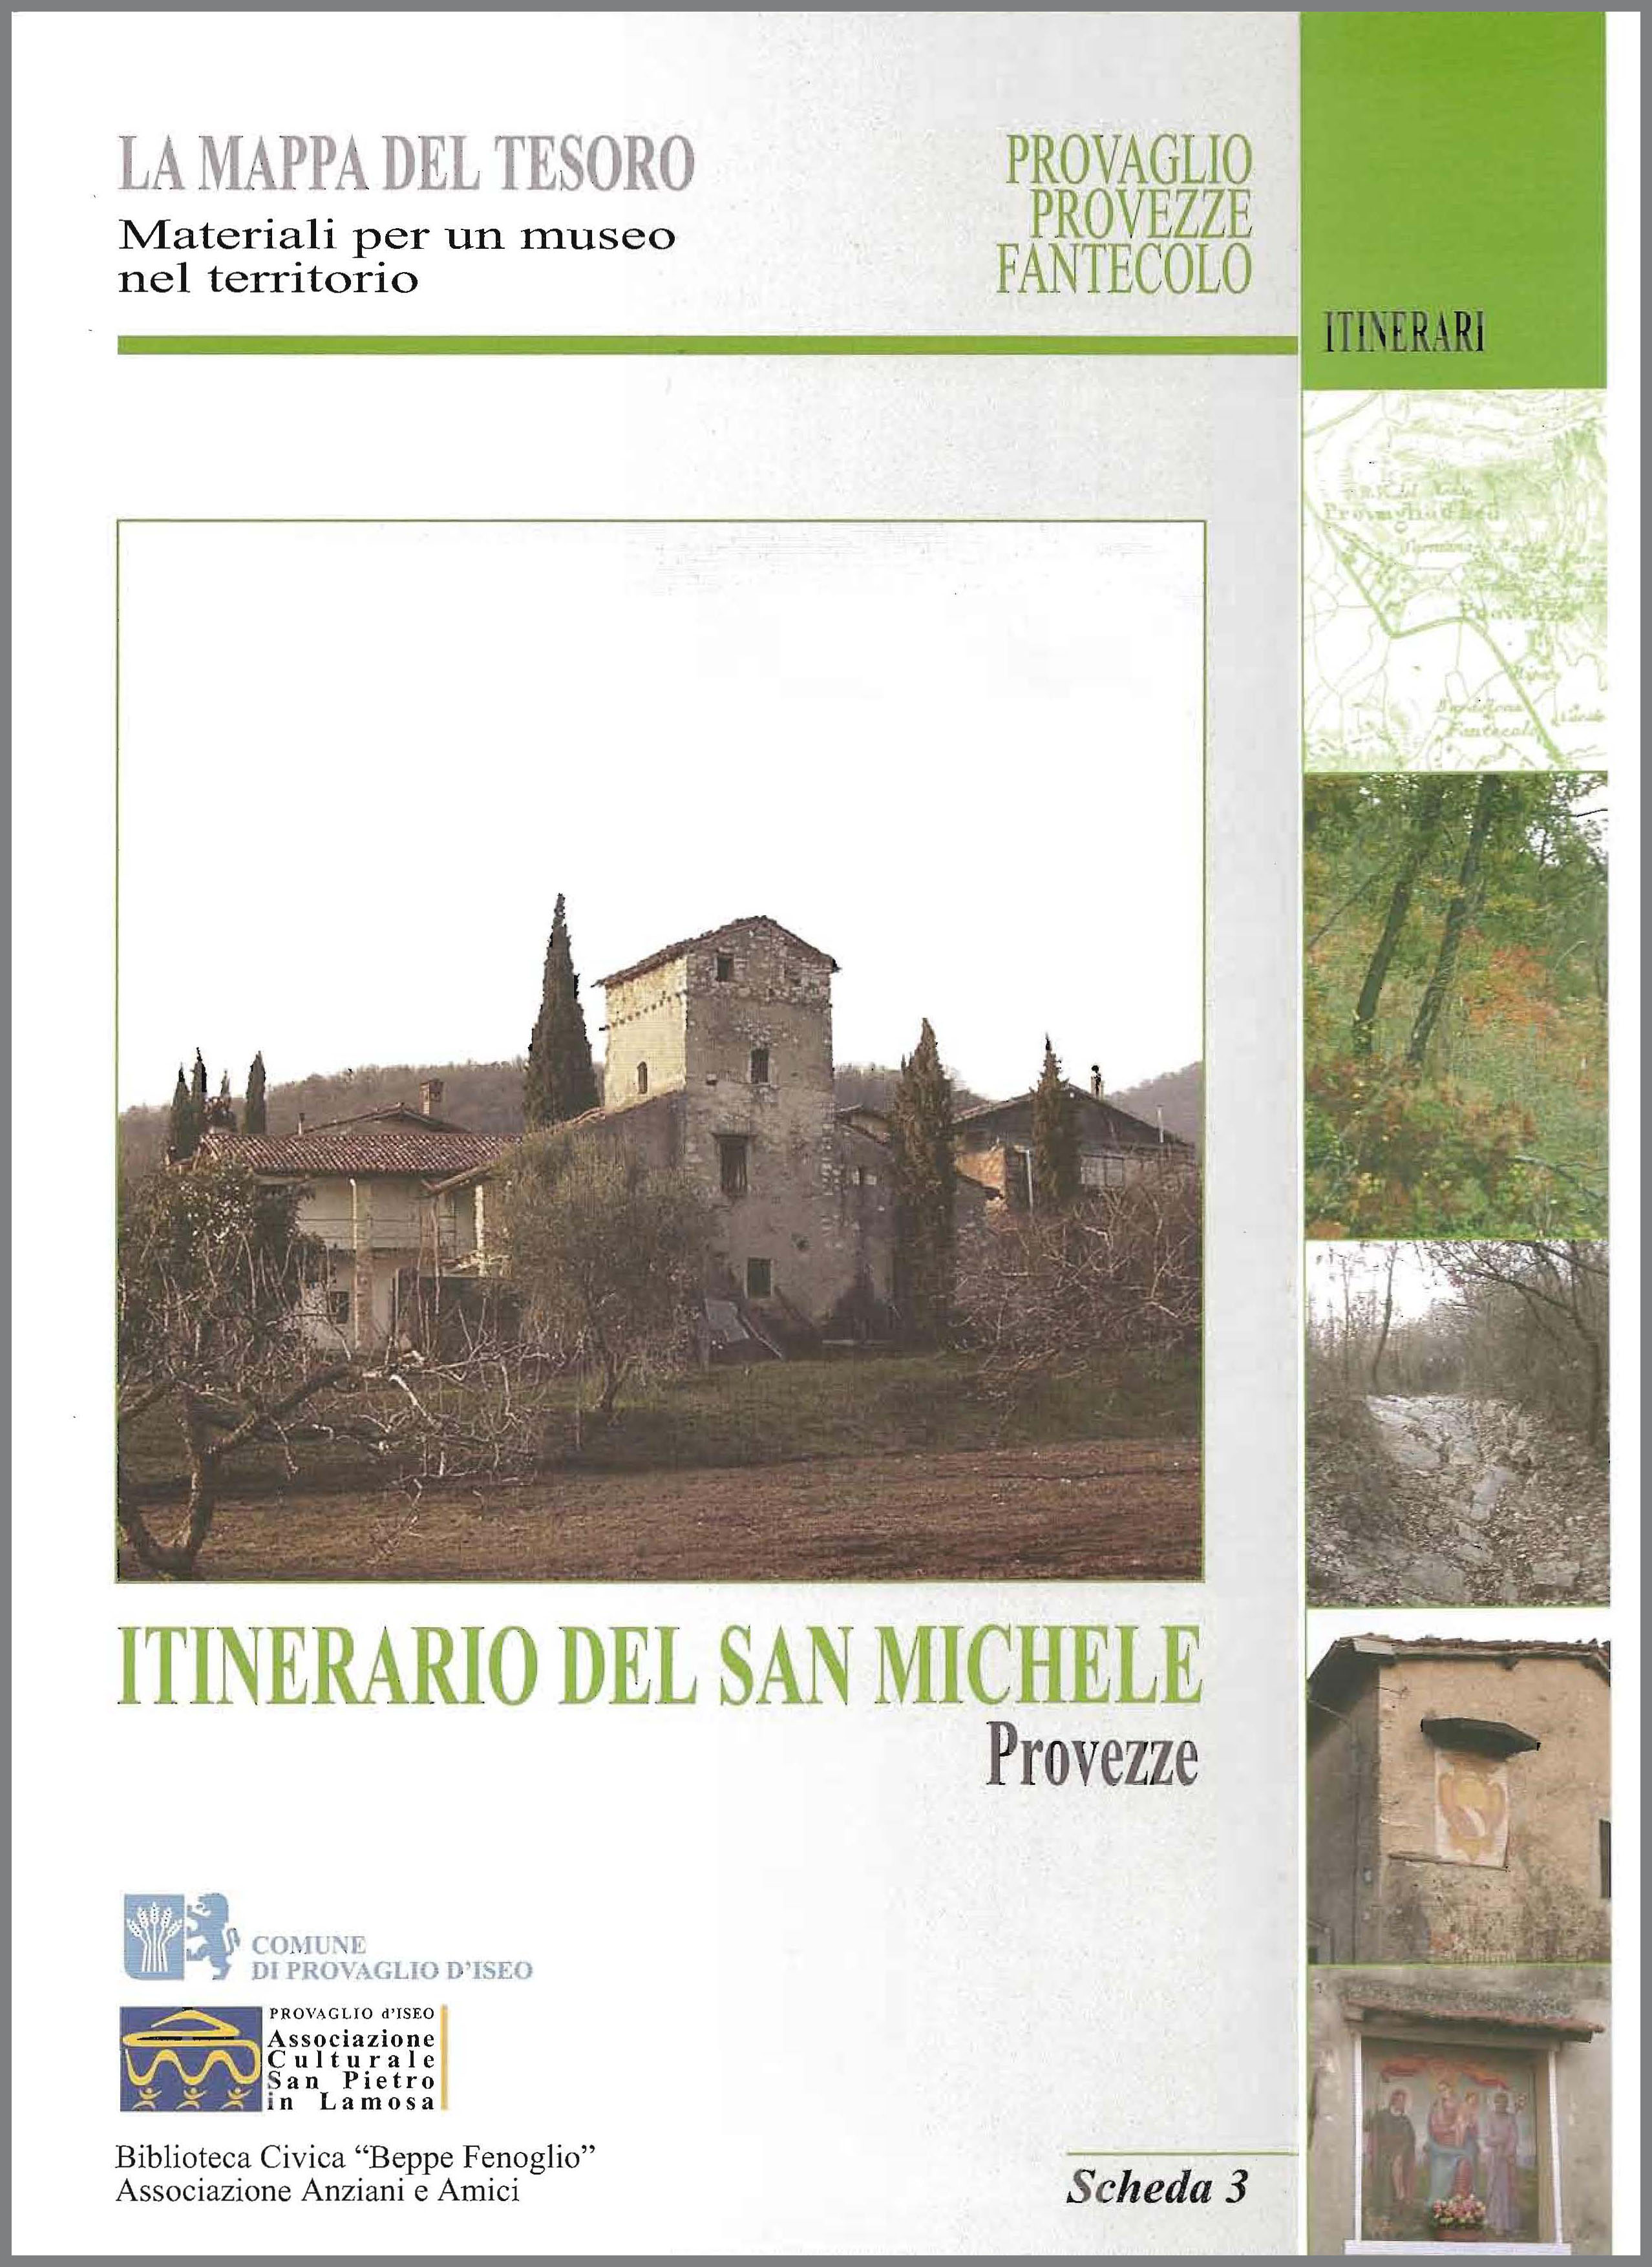 ITINERARIO DEL SAN MICHELE